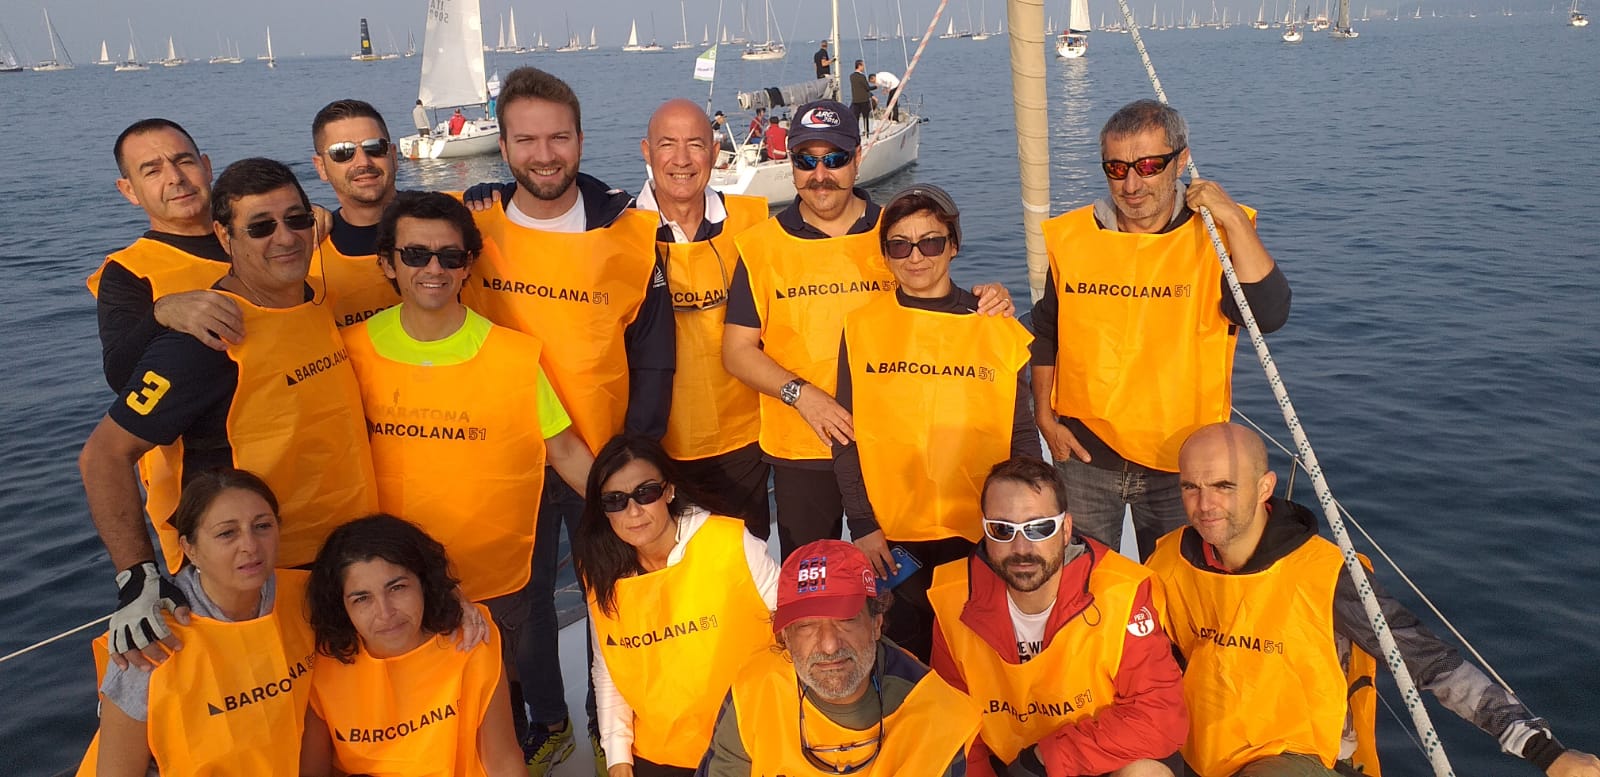 Olbia e Sassari alla Barcolana 2019 con un equipaggio speciale